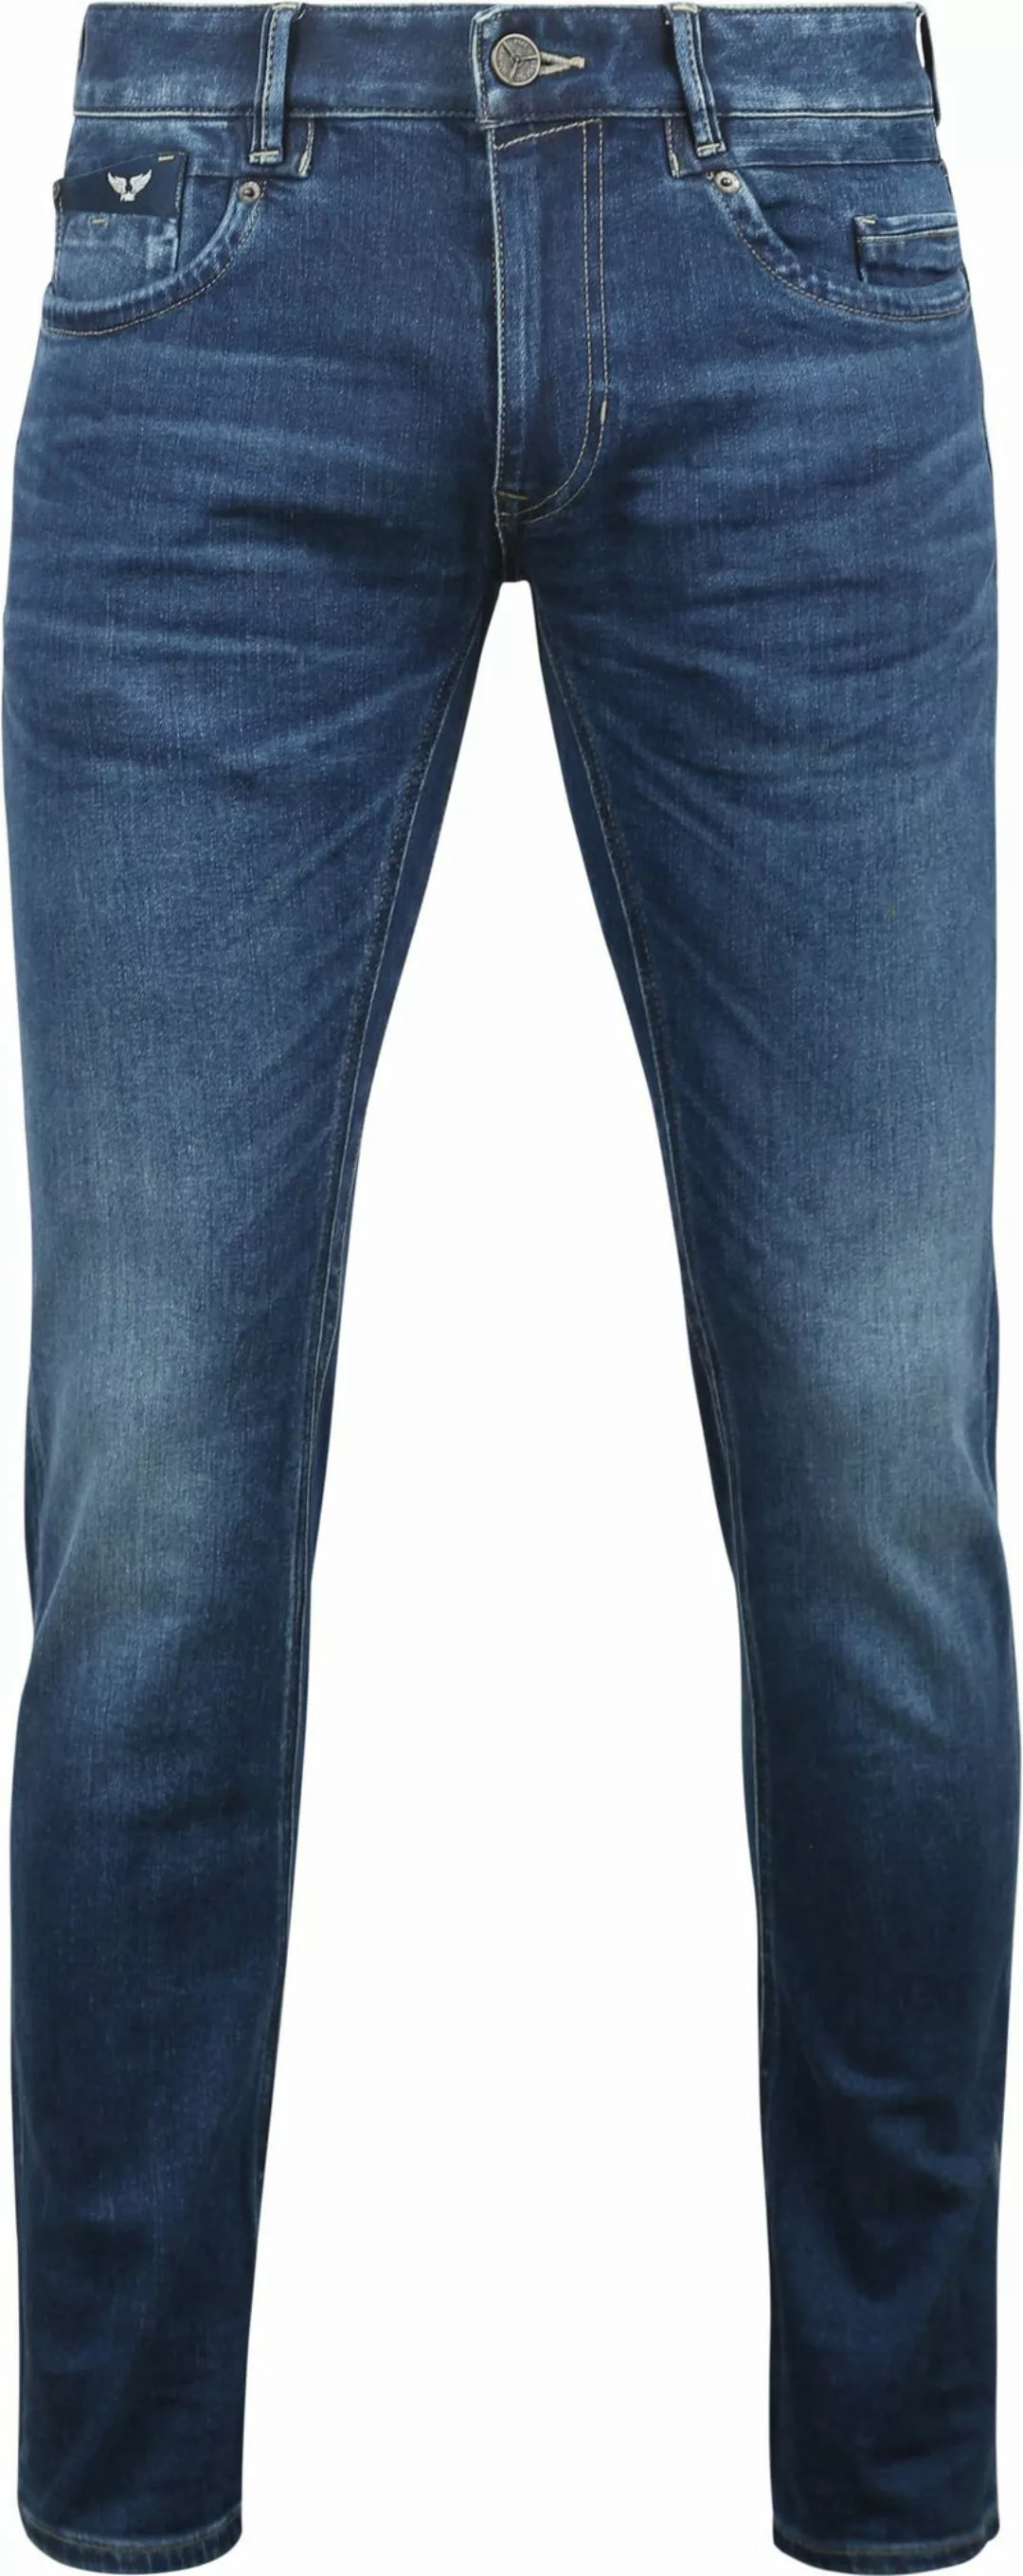 PME Legend Commander 3.0 Jeans Blau TBM - Größe W 35 - L 30 günstig online kaufen